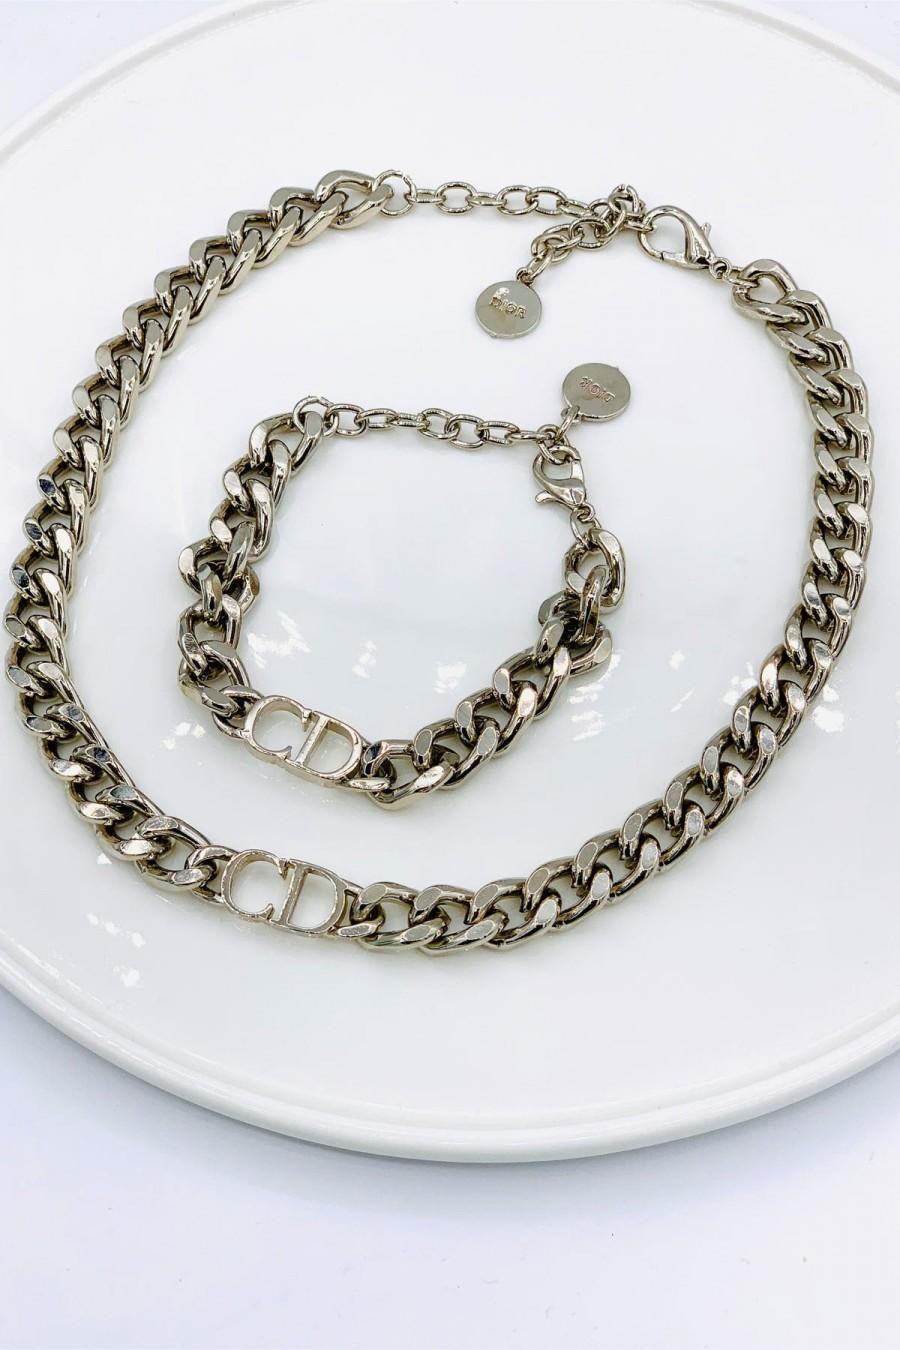 زفاف - Silver chain necklace silver plated brand necklace meaningful necklace well-known necklace dior necklace chain design necklace written neckl